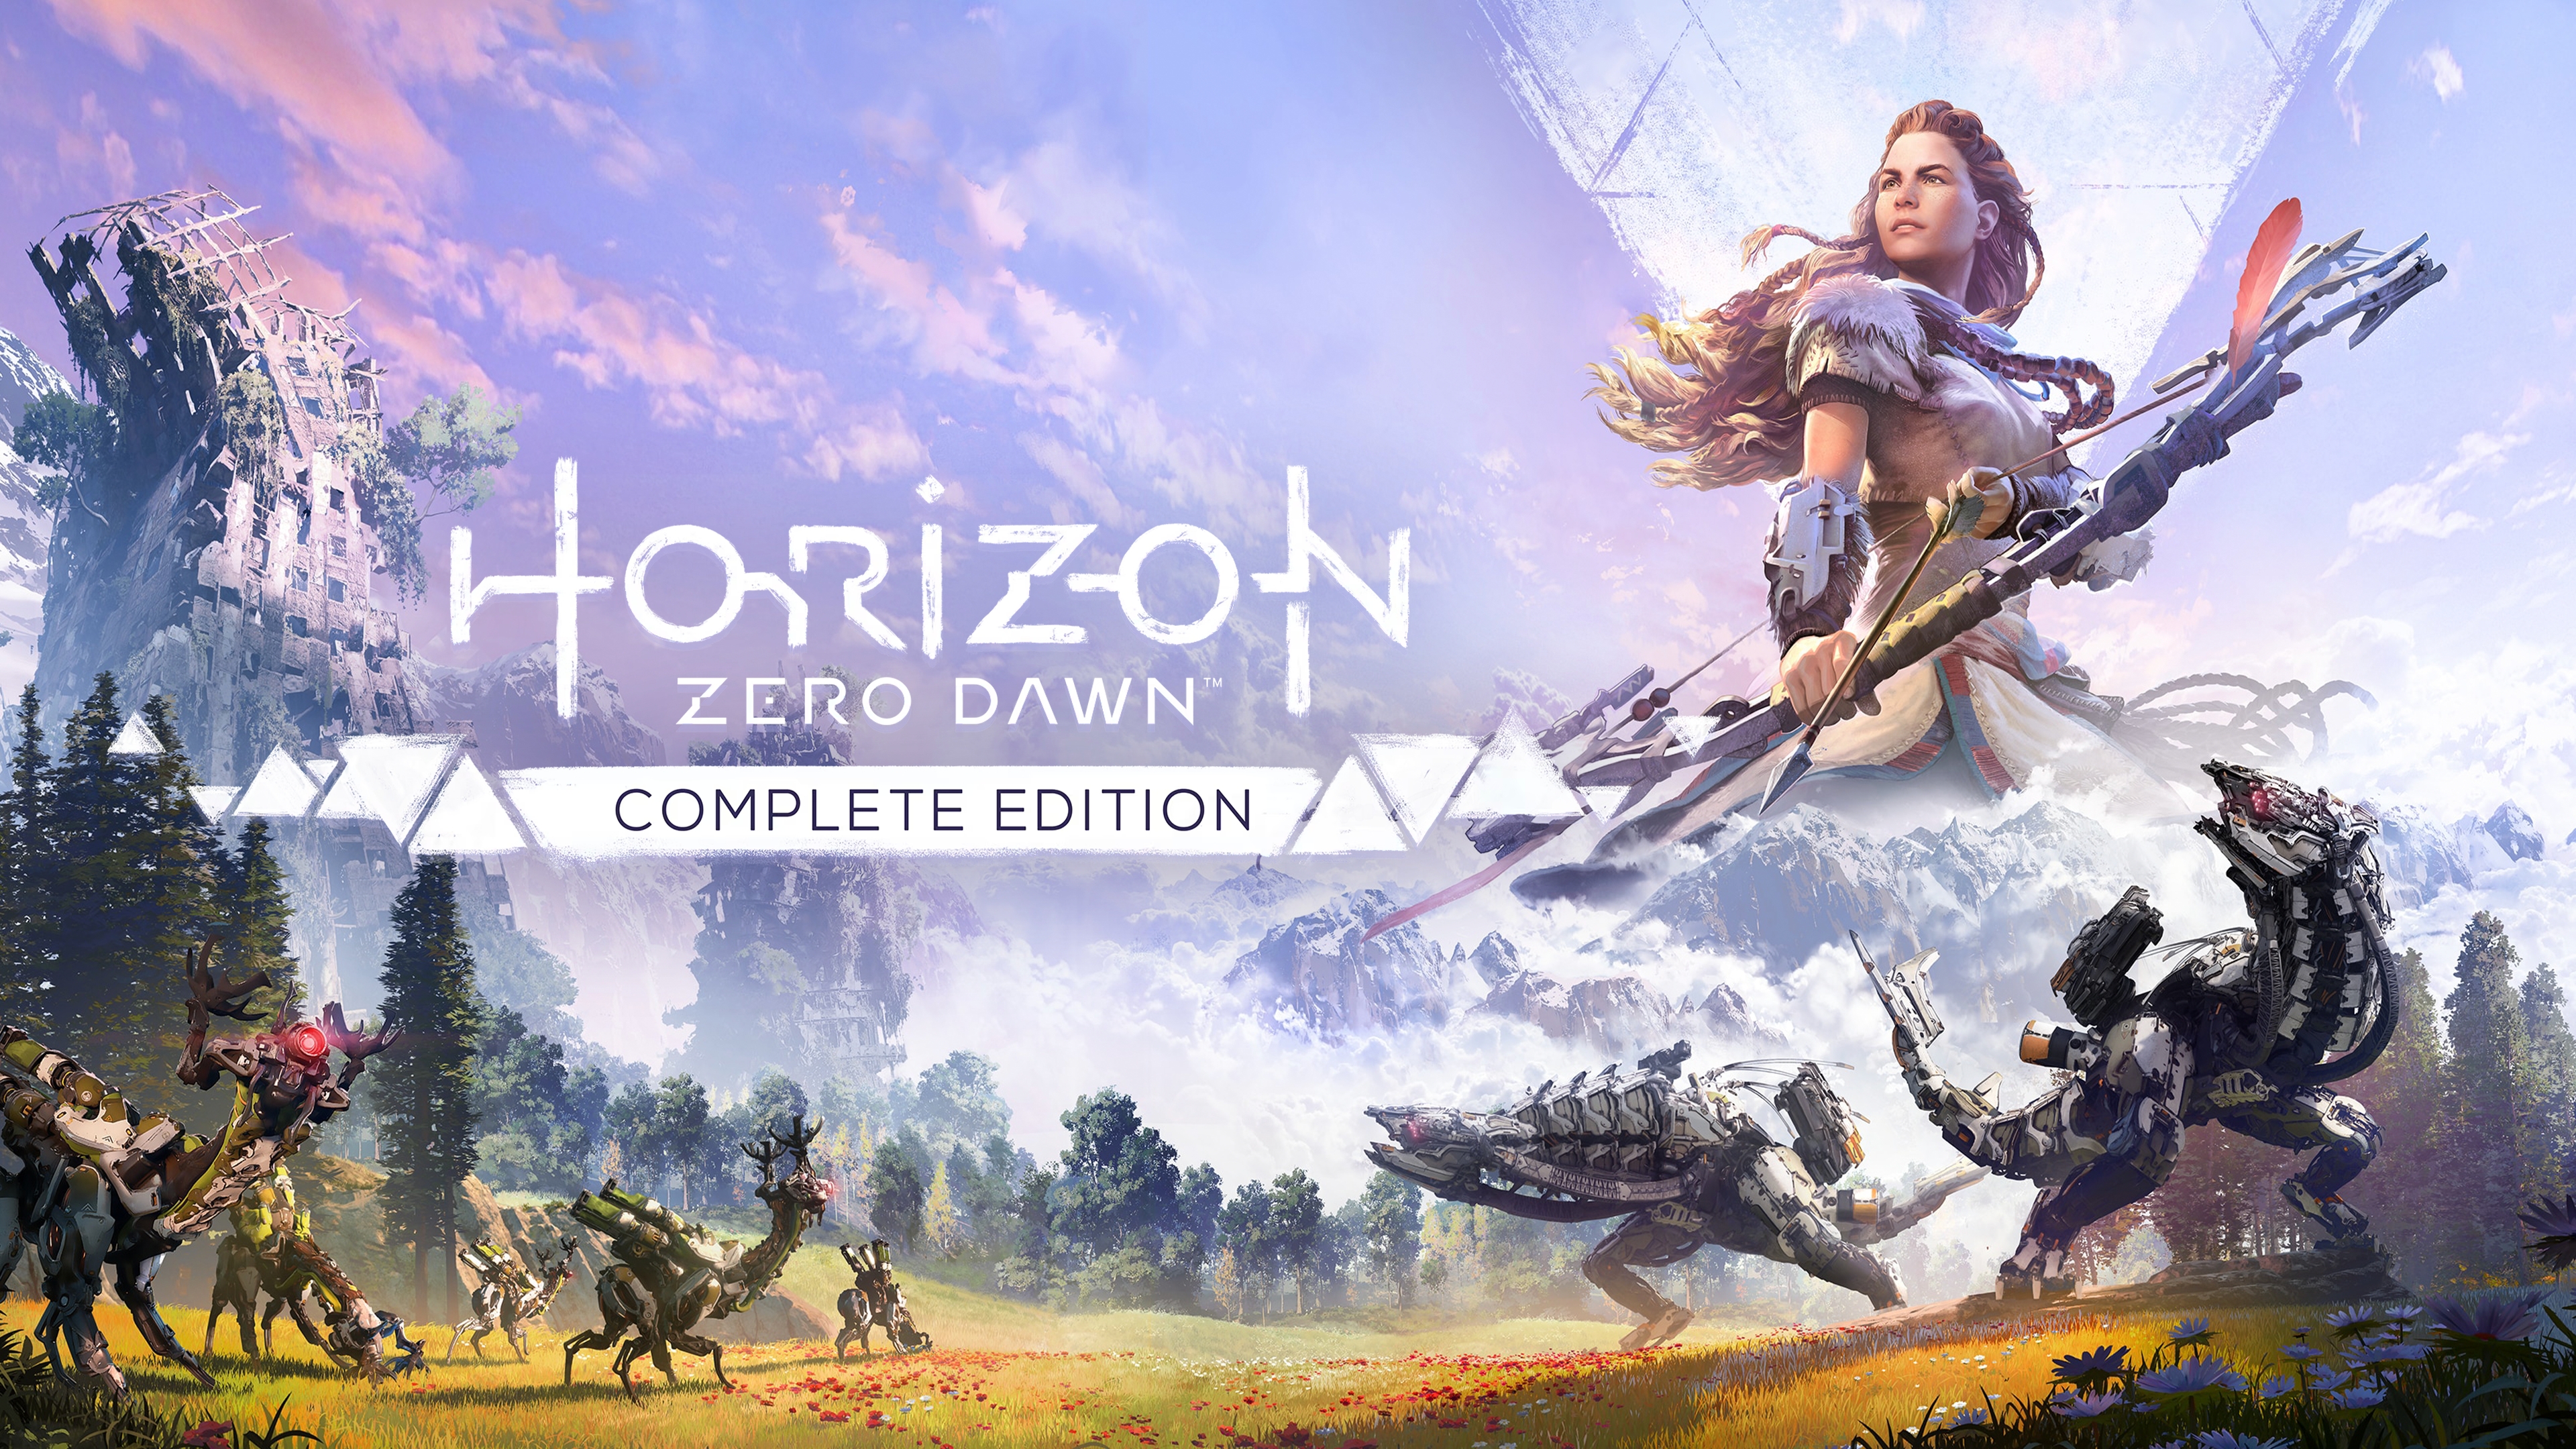 Aquí están los requisitos para jugar Horizon: Zero Dawn en PC